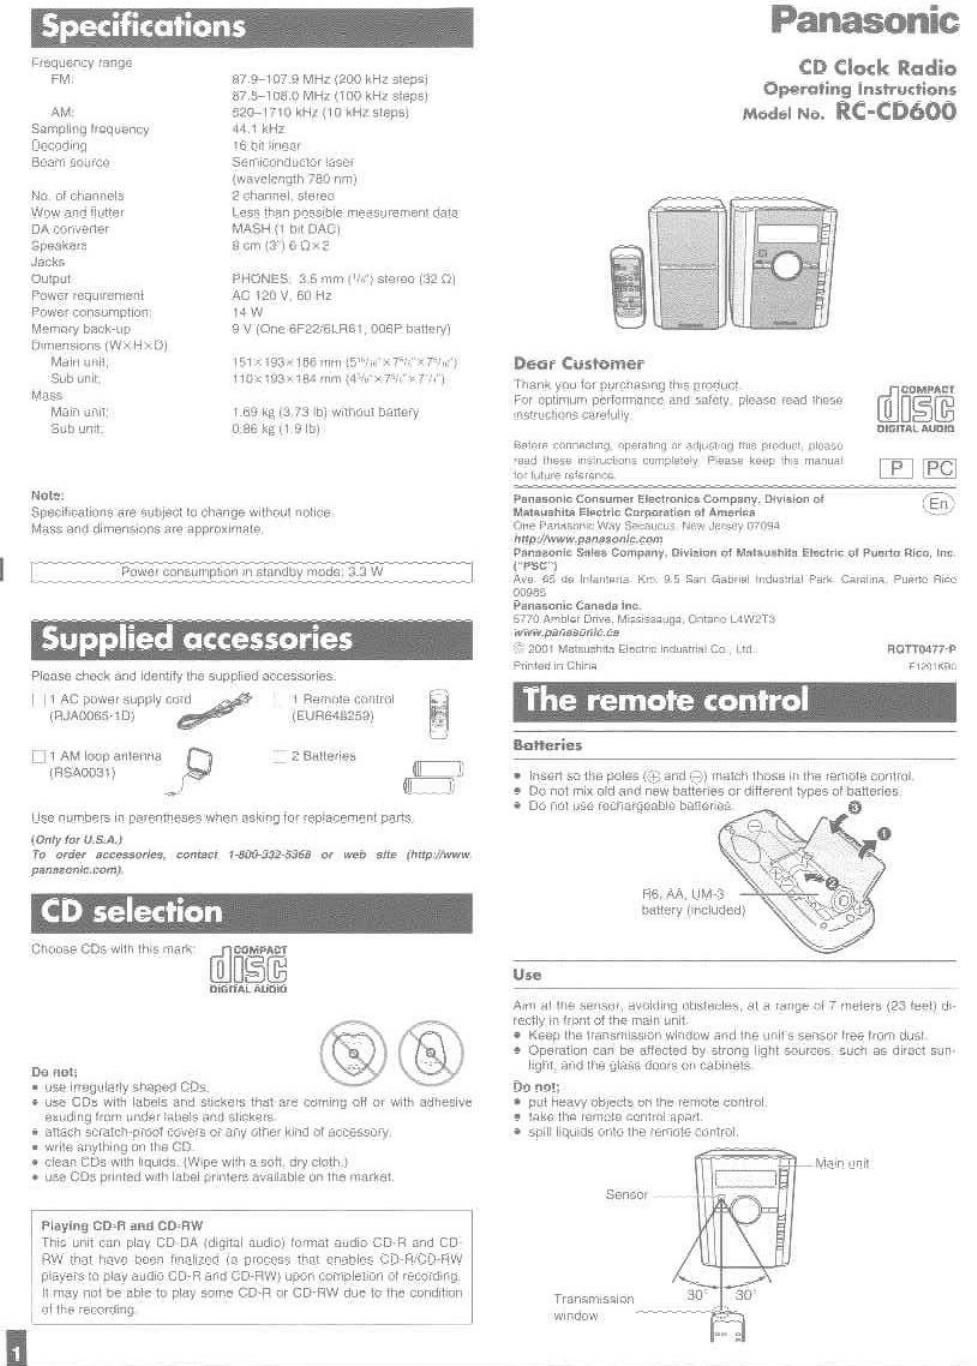 panasonic rc cd 600 owners manual